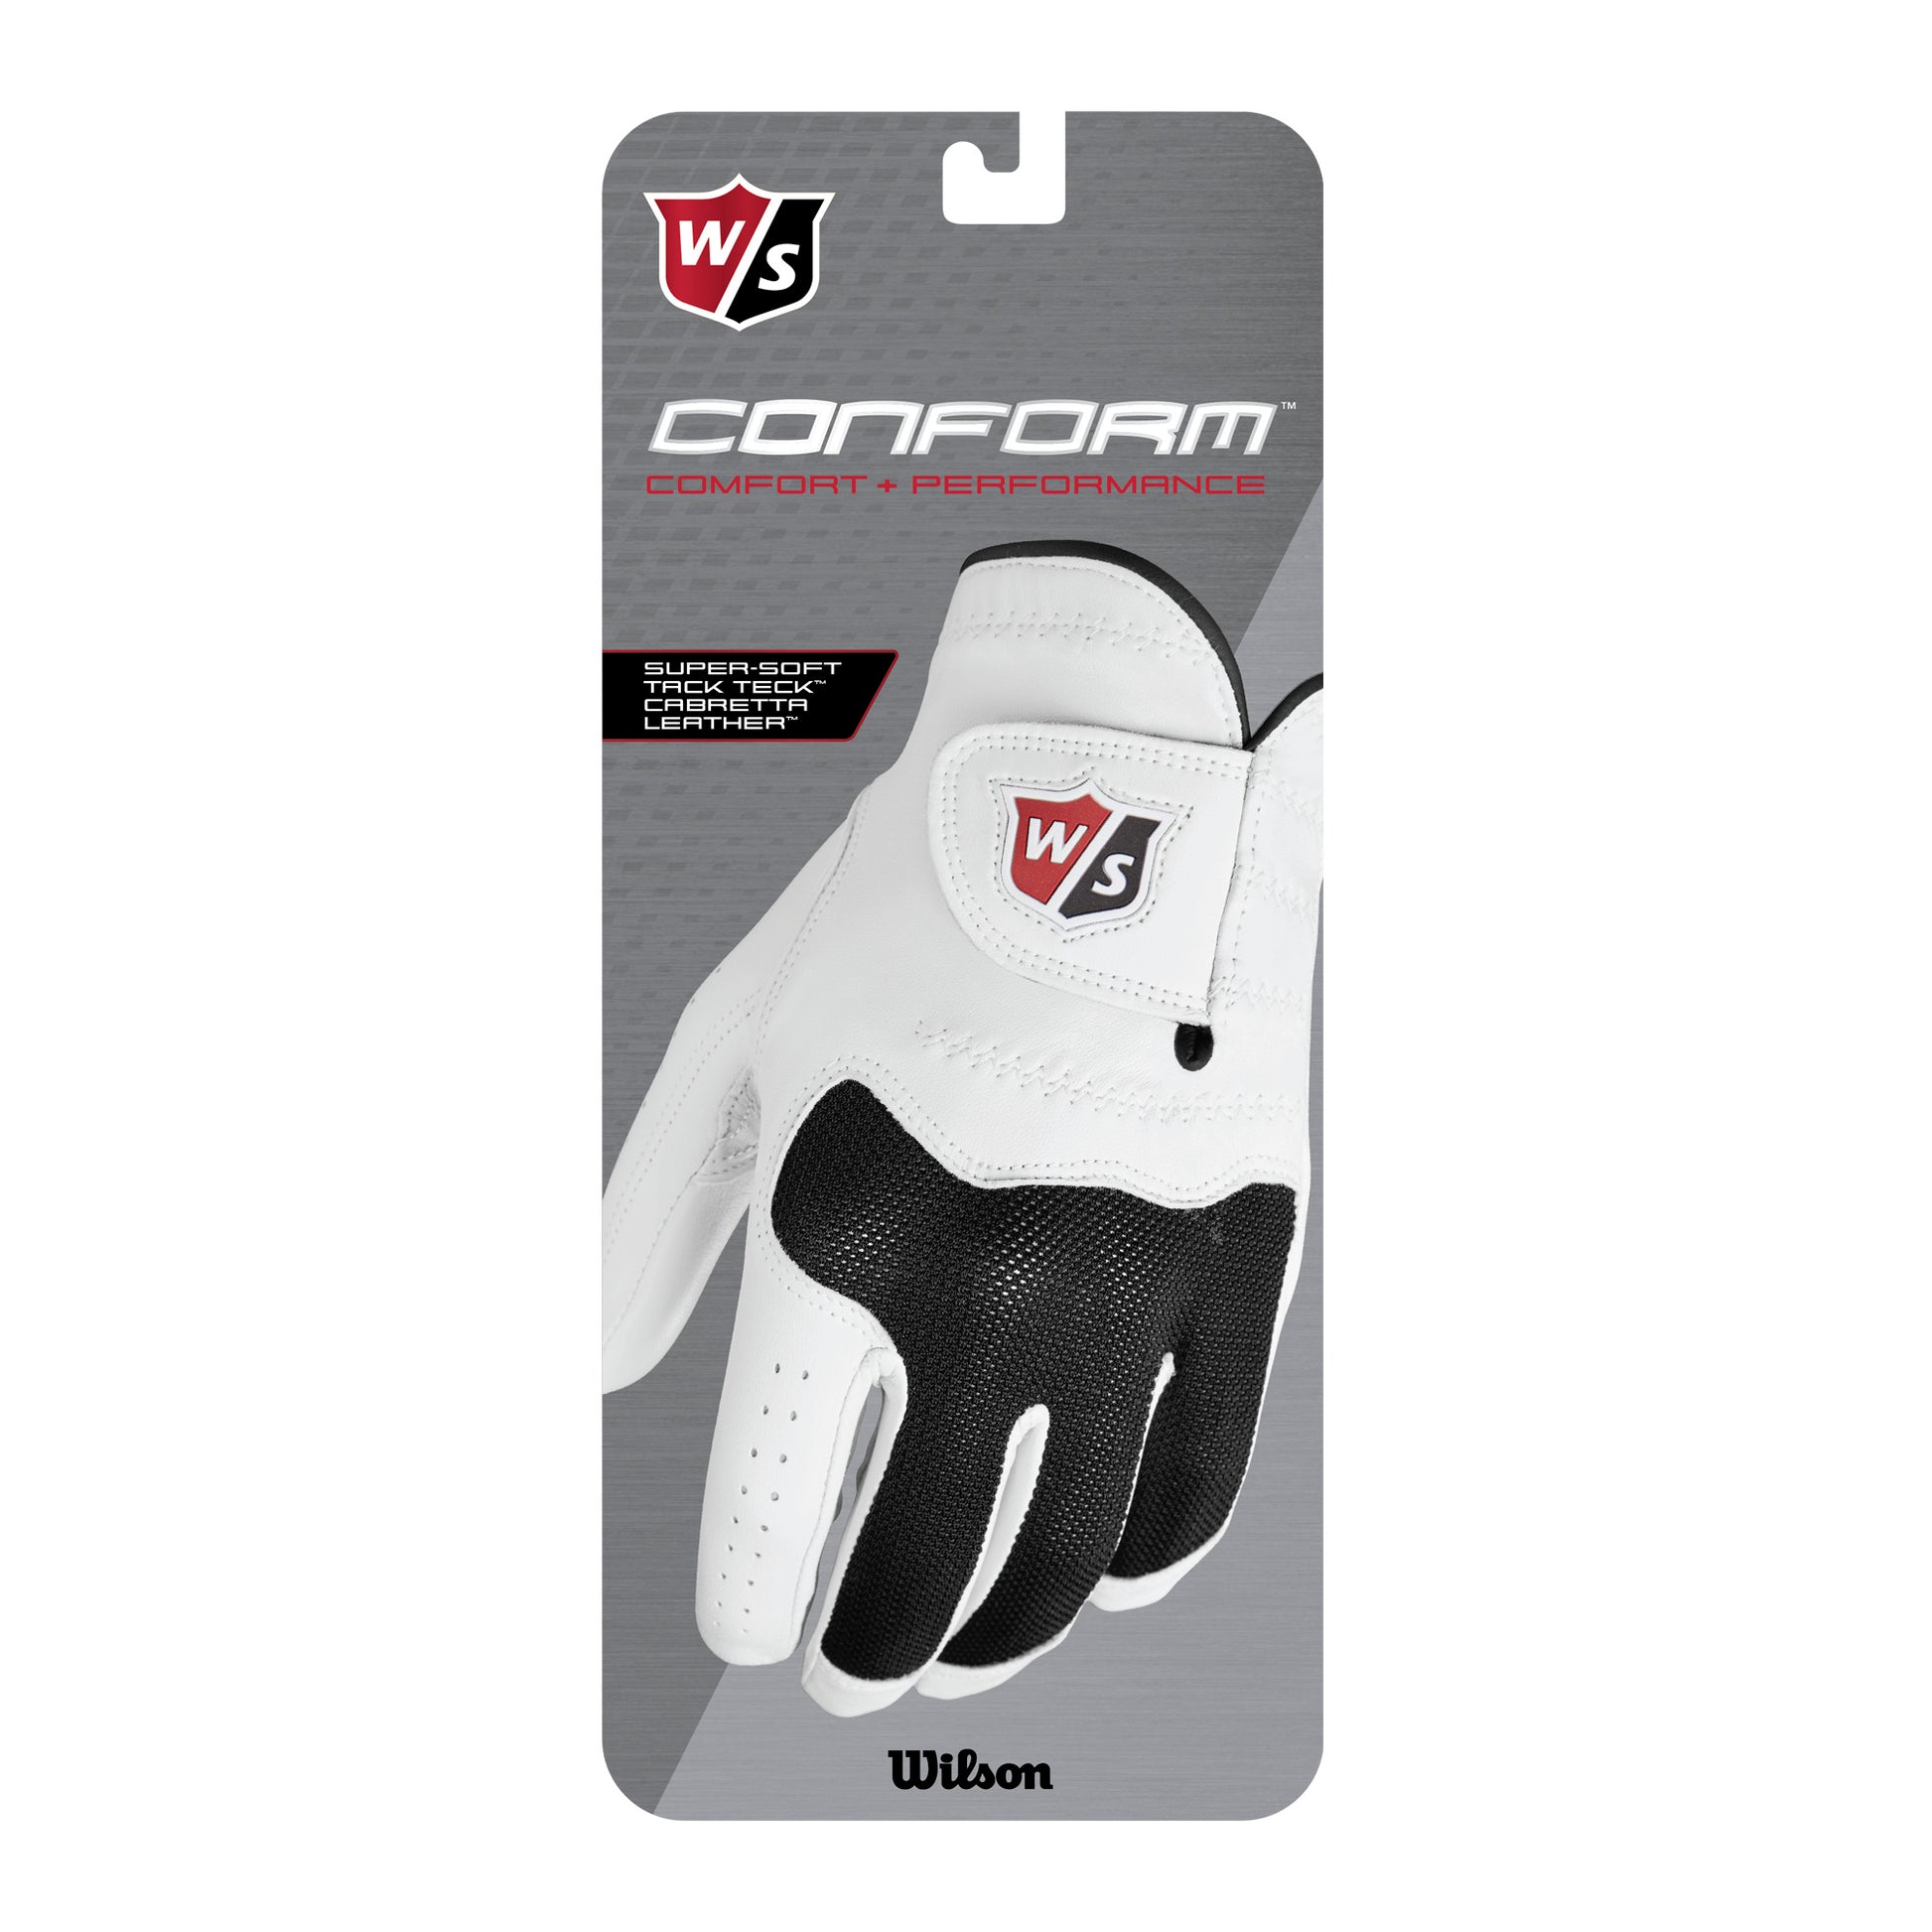 Wilson Staff Conform Golf Glove, Men, White